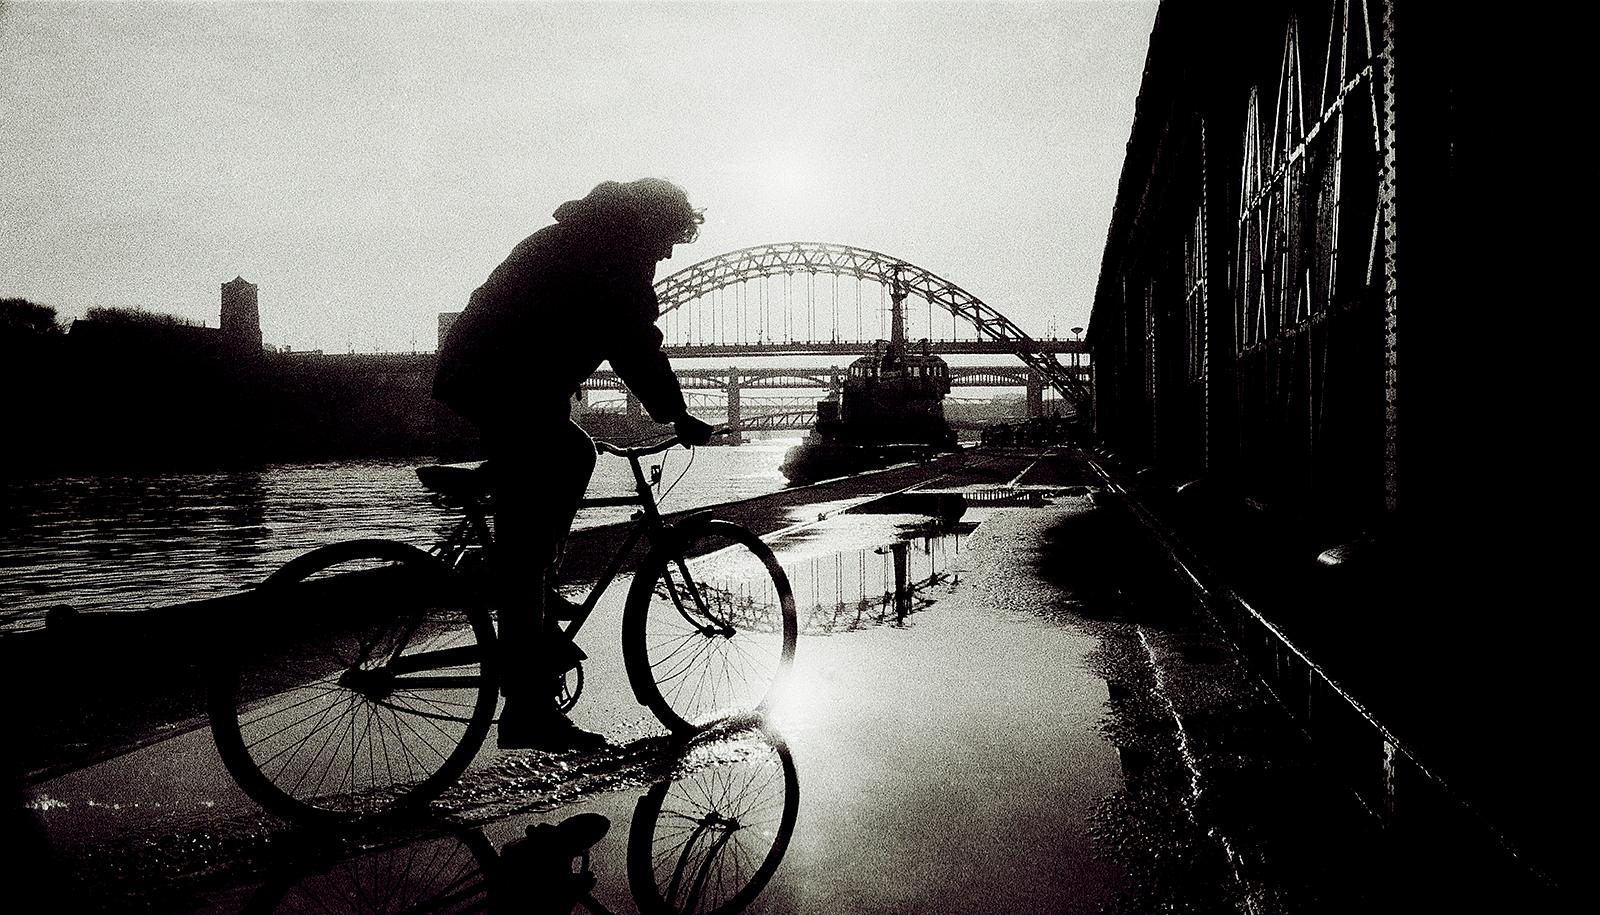 Landscape Photograph Ian Sanderson - Impression d'un paysage urbain, noir et blanc, Contemporain, Photo analogique - Newcastle 